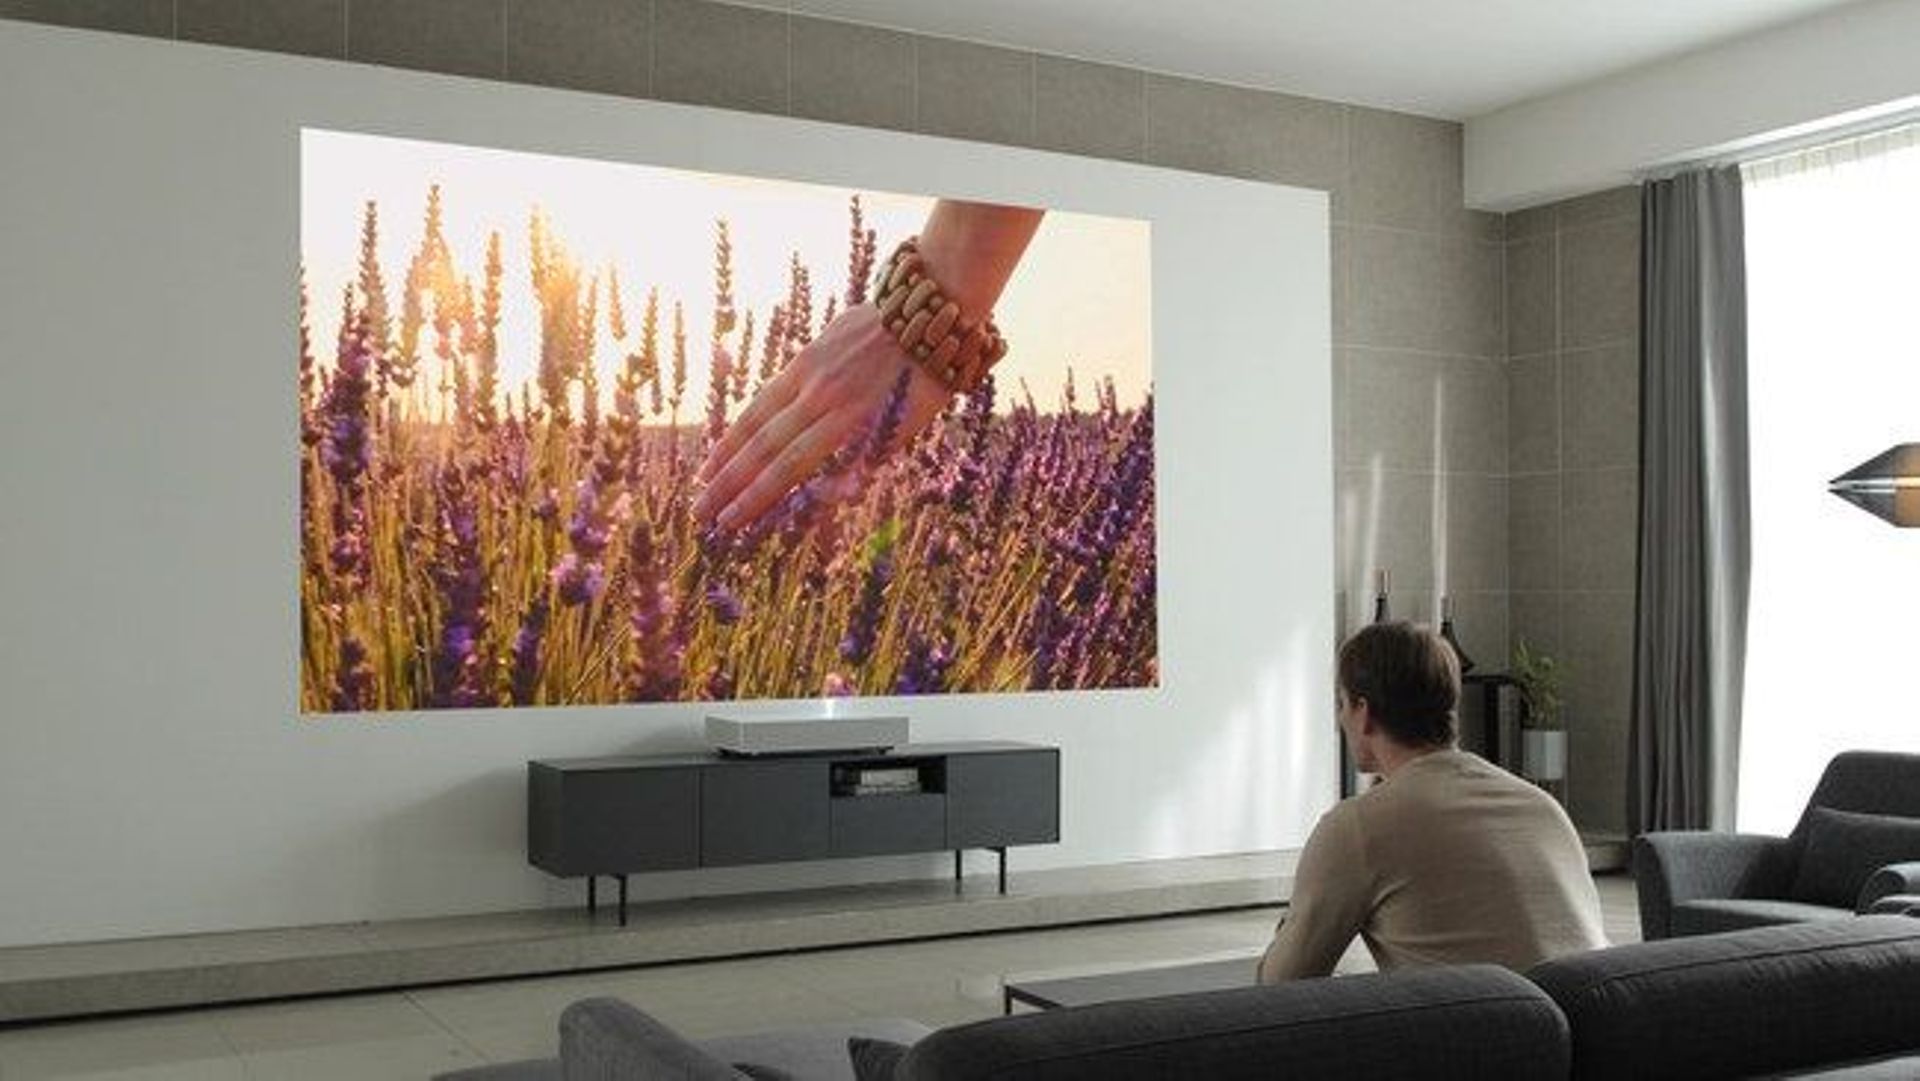 Équipé de la technologie AI ThinQ de LG et de l'Assistant Google, ce projecteur intelligent peut effectuer toutes les commandes des autres appareils connectés de la maison